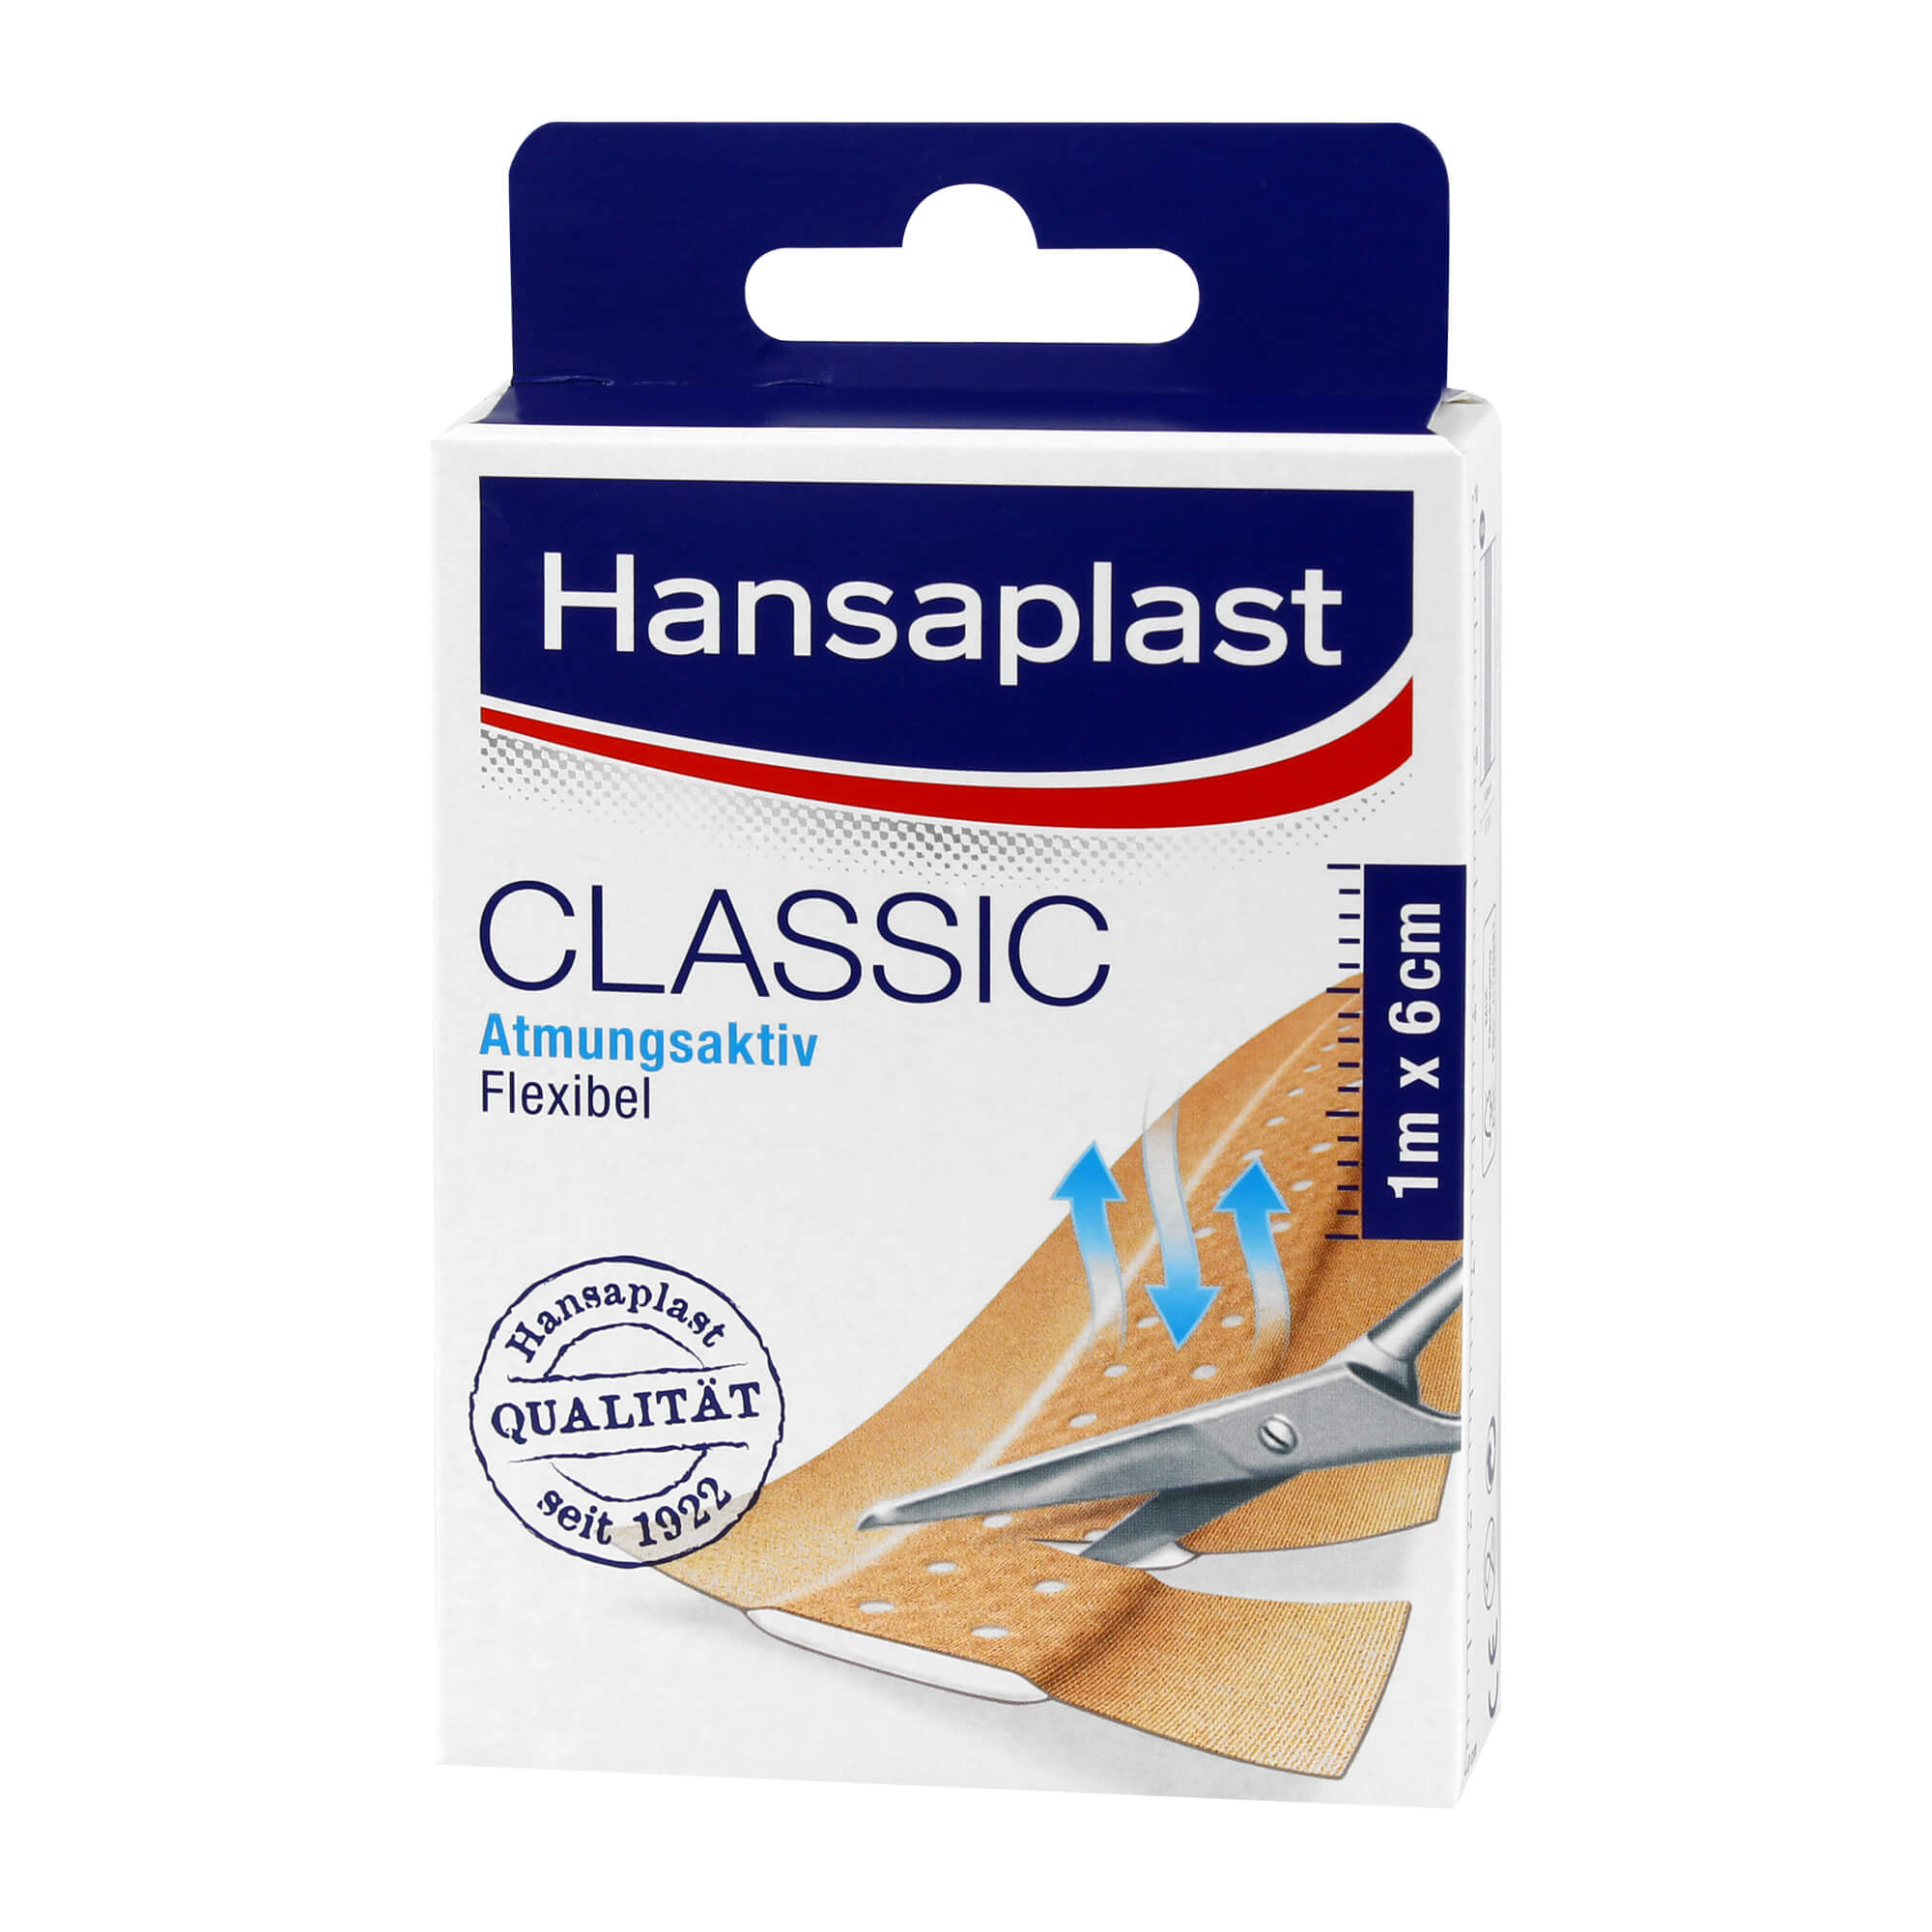 Hansaplast Classic Textilpflaster für alltägliche kleine Verletzungen. 1mx6cm